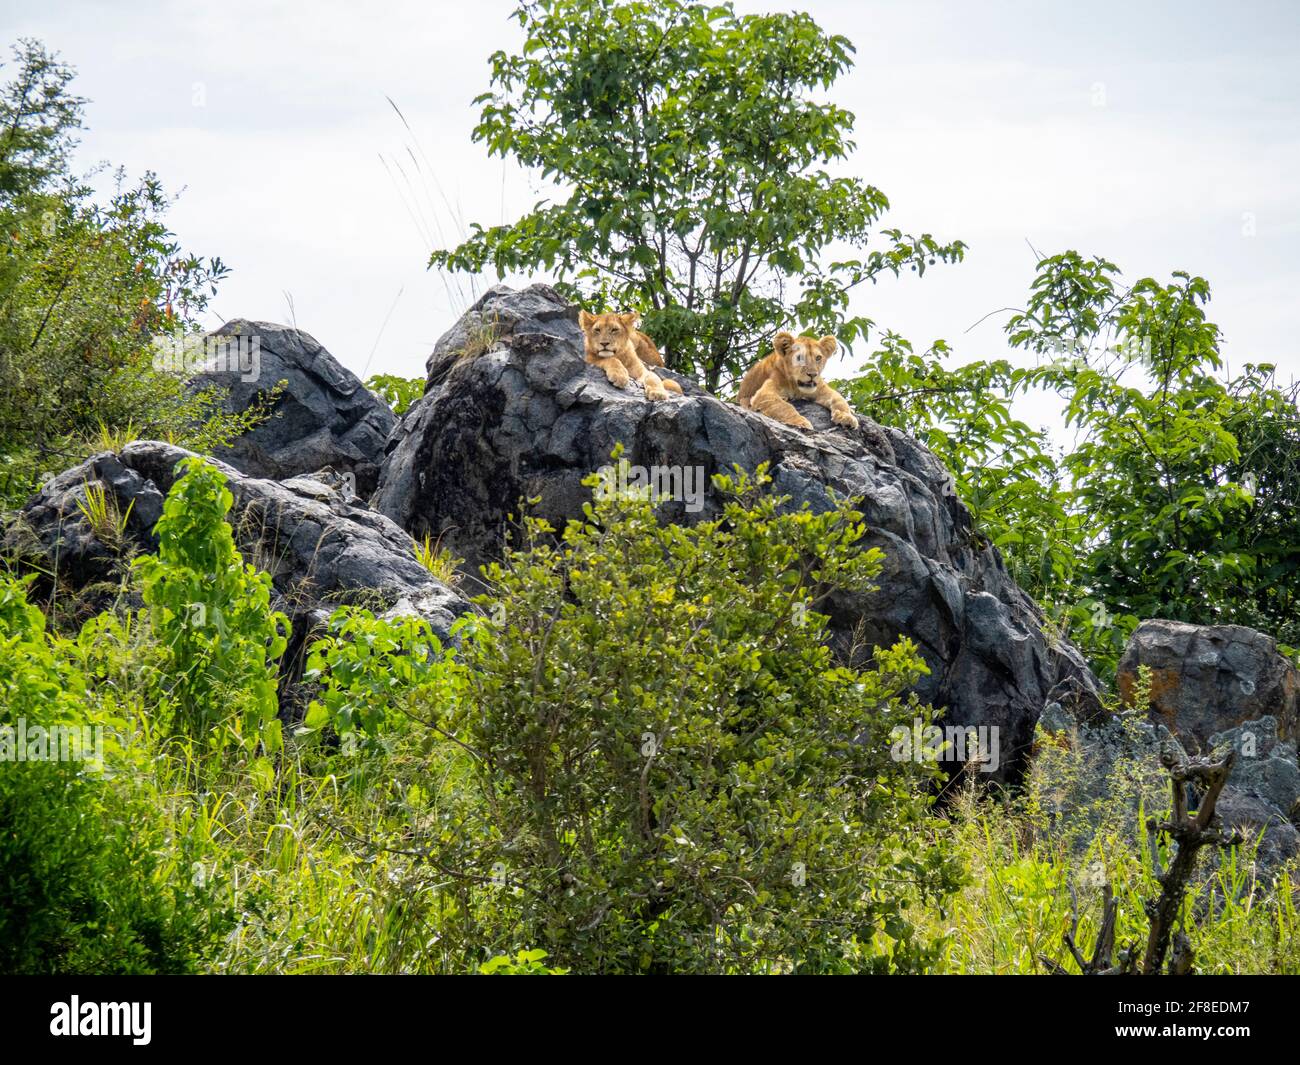 Parc national de Serengeti, Tanzanie, Afrique - 29 février 2020 : le lion s'acserre sur le rocher en profitant du soleil Banque D'Images